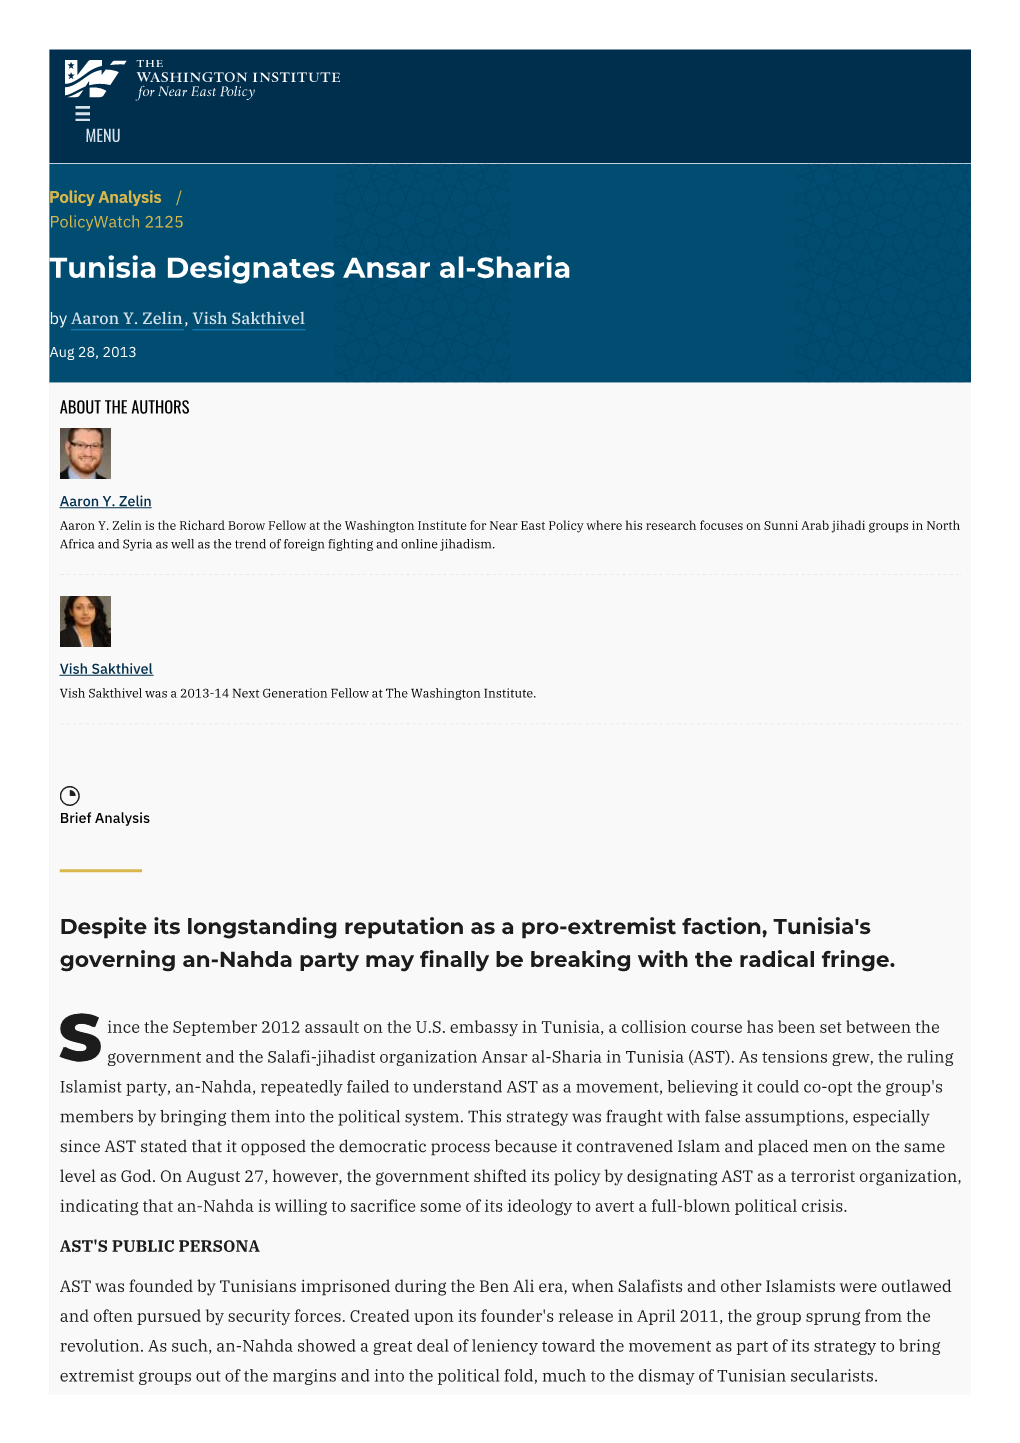 Tunisia Designates Ansar Al-Sharia | the Washington Institute